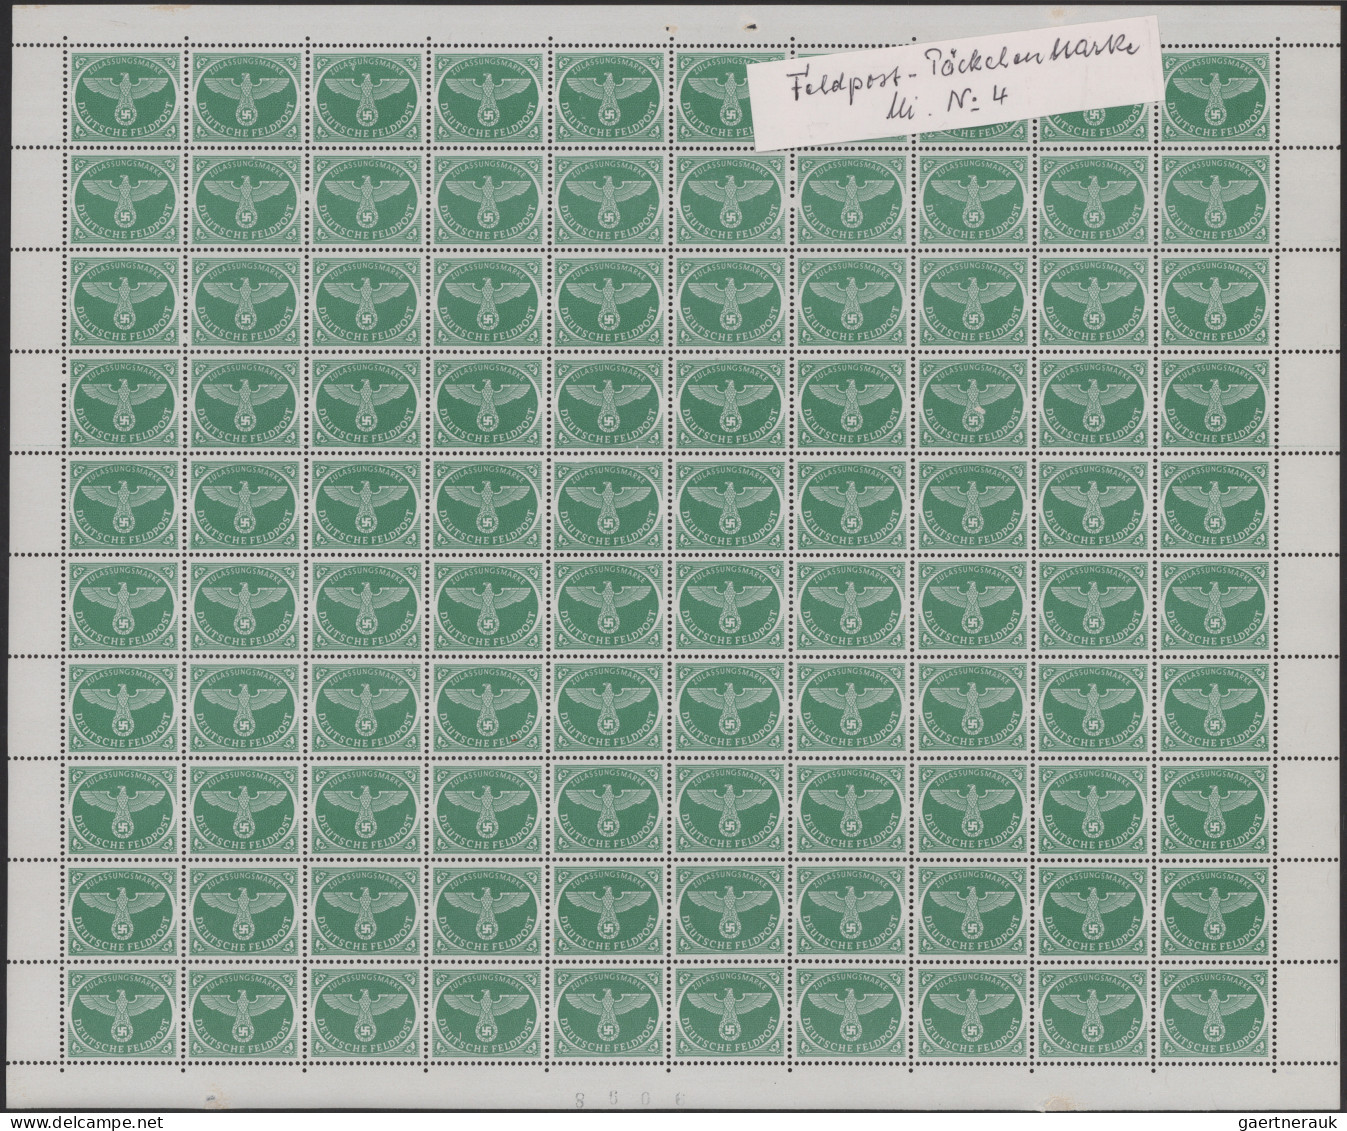 Feldpostmarken: 1942/1945, gestempelte und ungebrauchte Sammlung auf Albenblätte